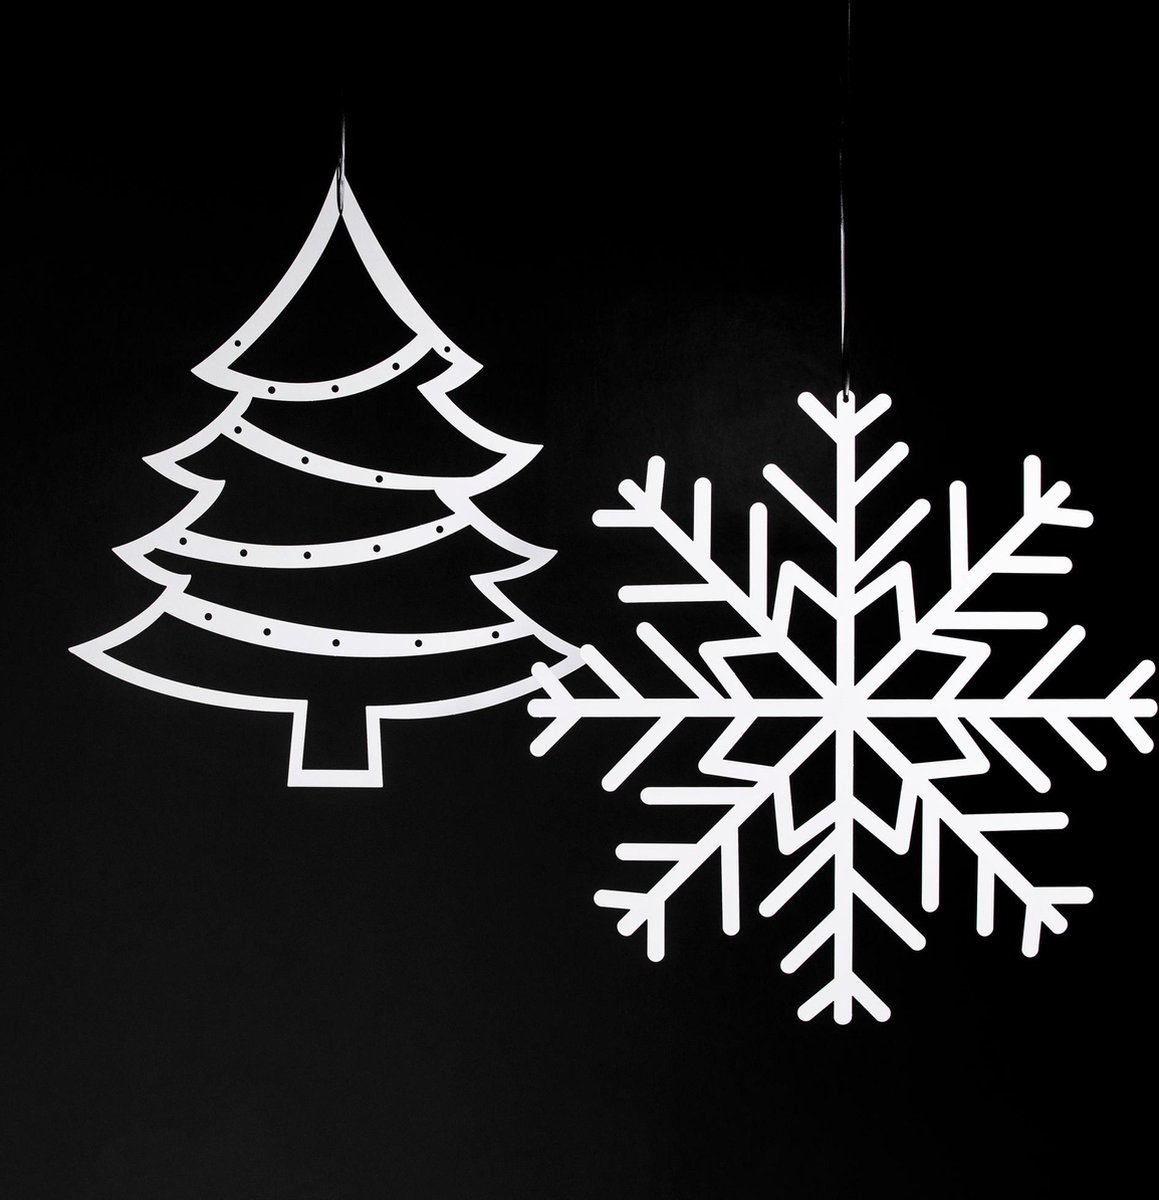 Kerstkaarten houder - Set van 2 - Sneeuwvlok & Kerstboom - Goud - Metaal - Kerstversiering - Kaartenhouder